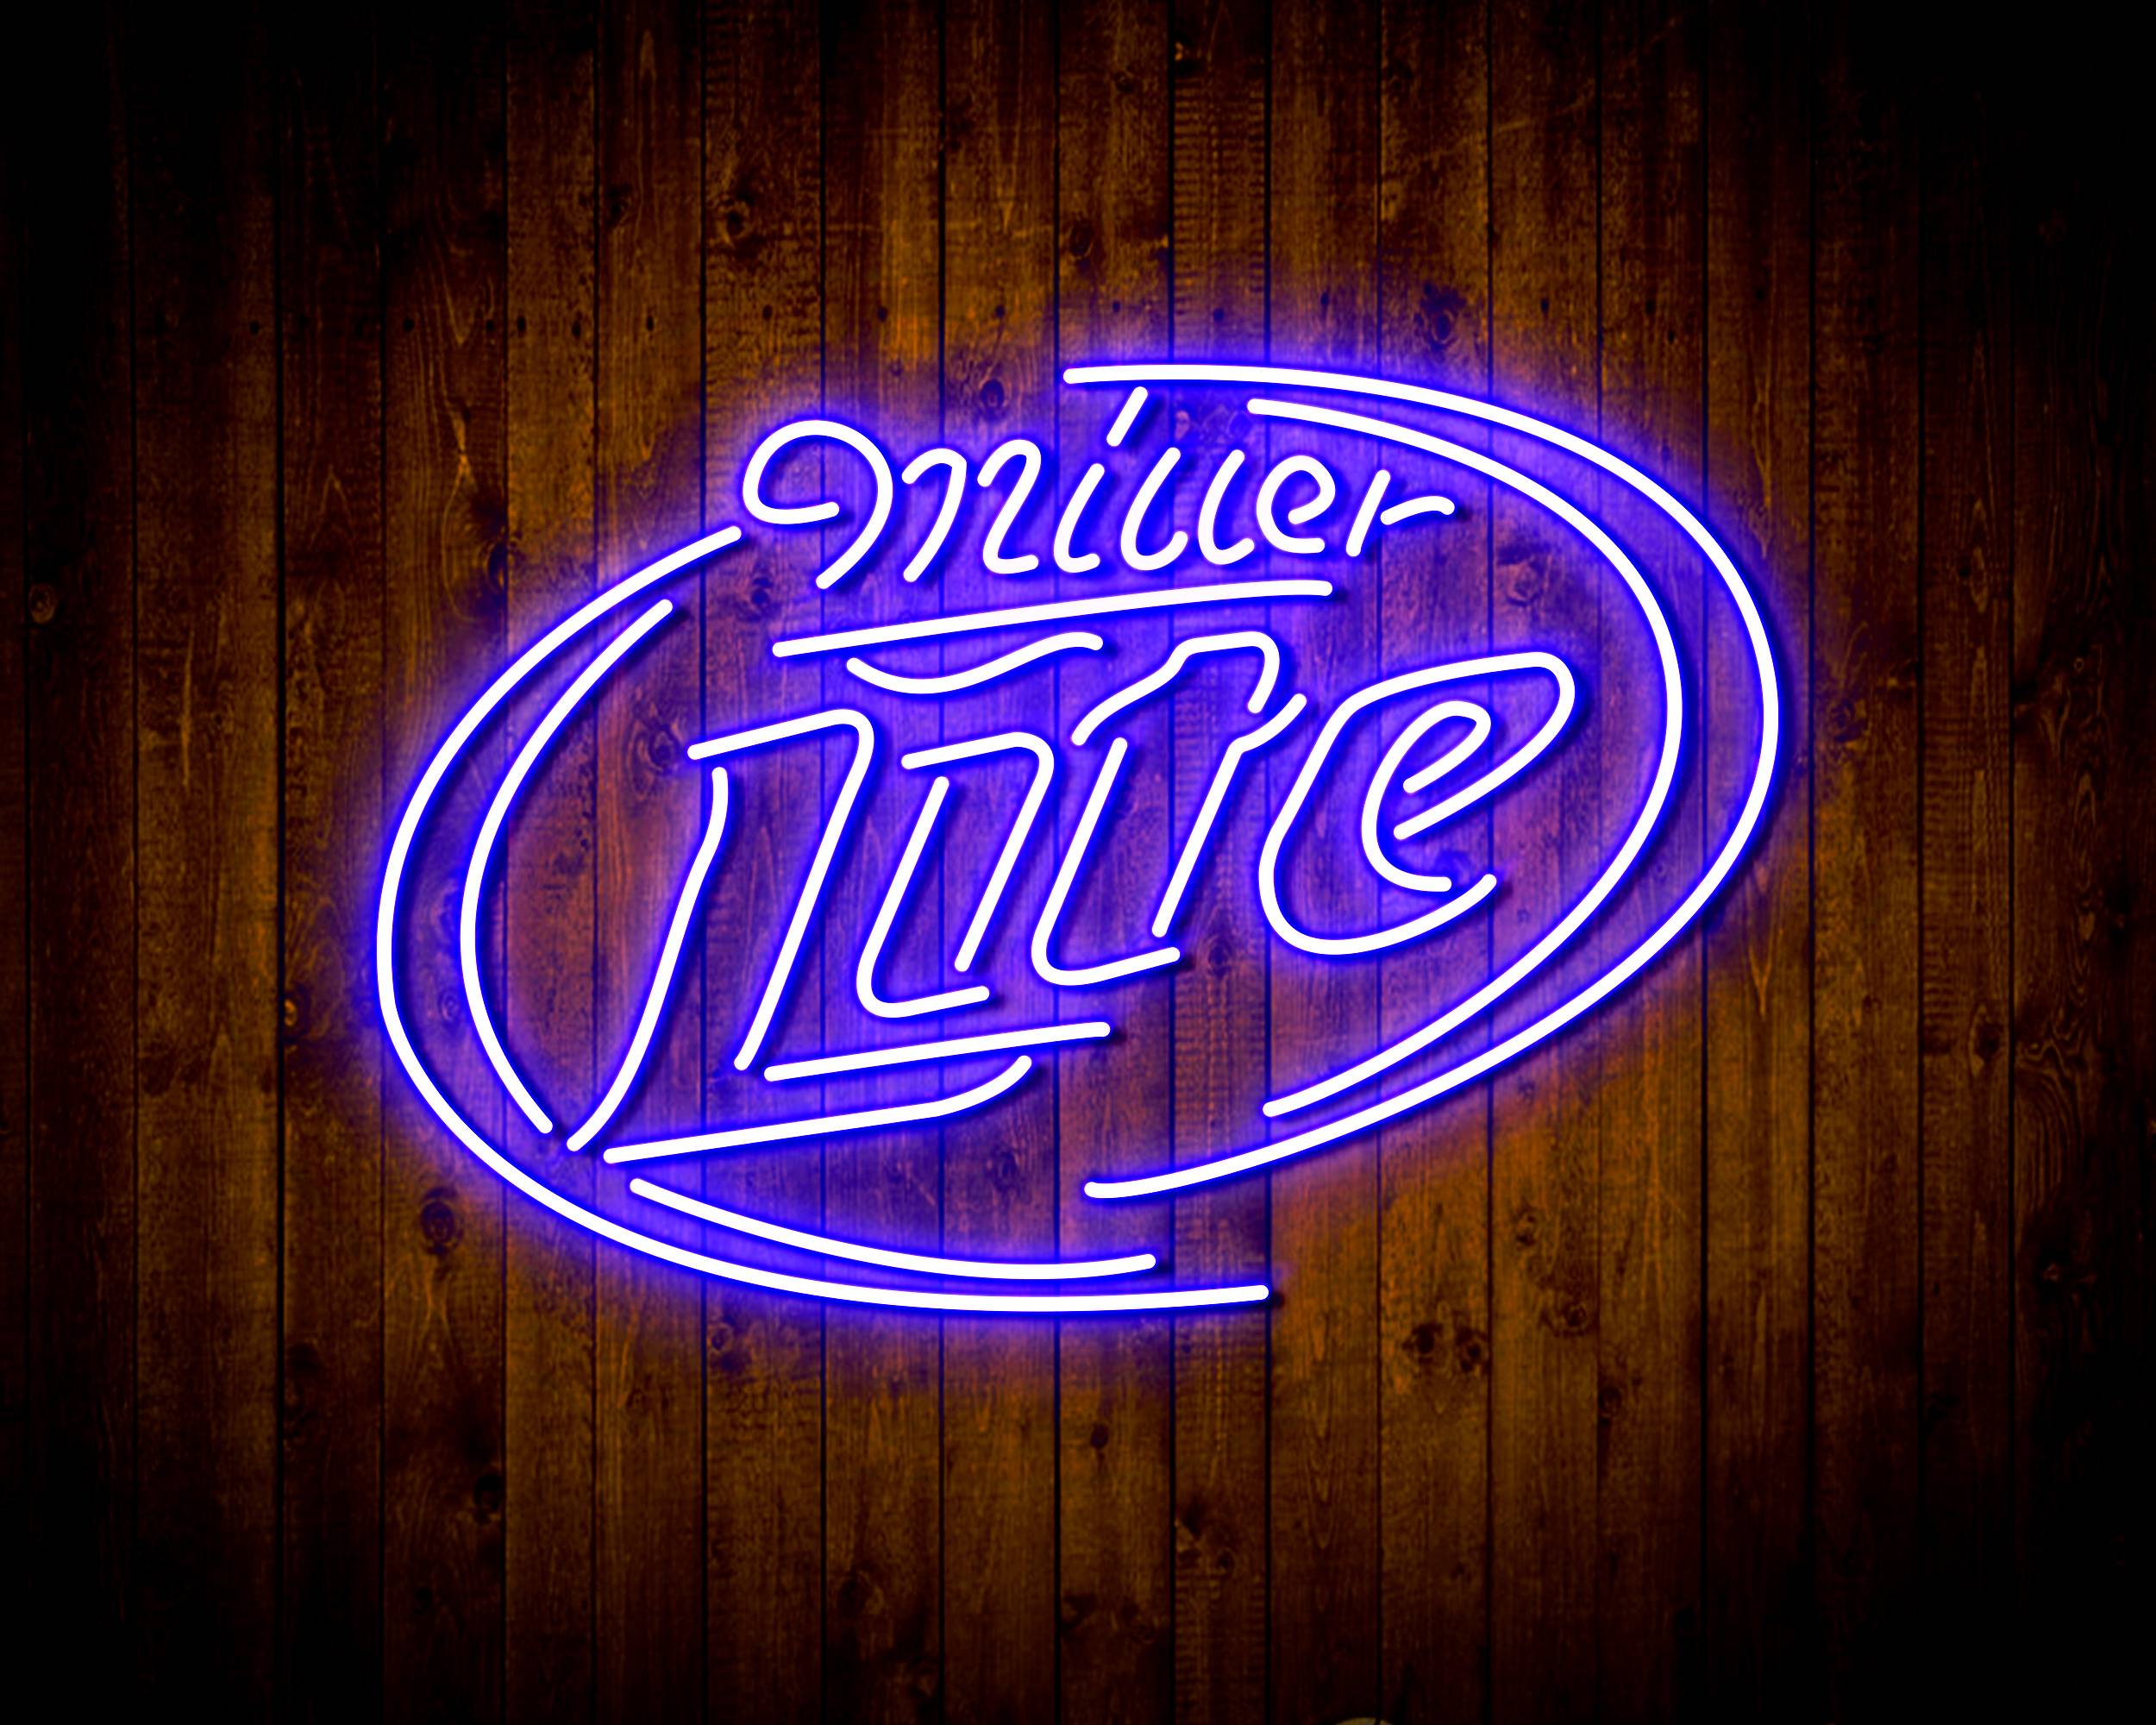 Miller Lite 2 Handmade LED Neon Light Sign